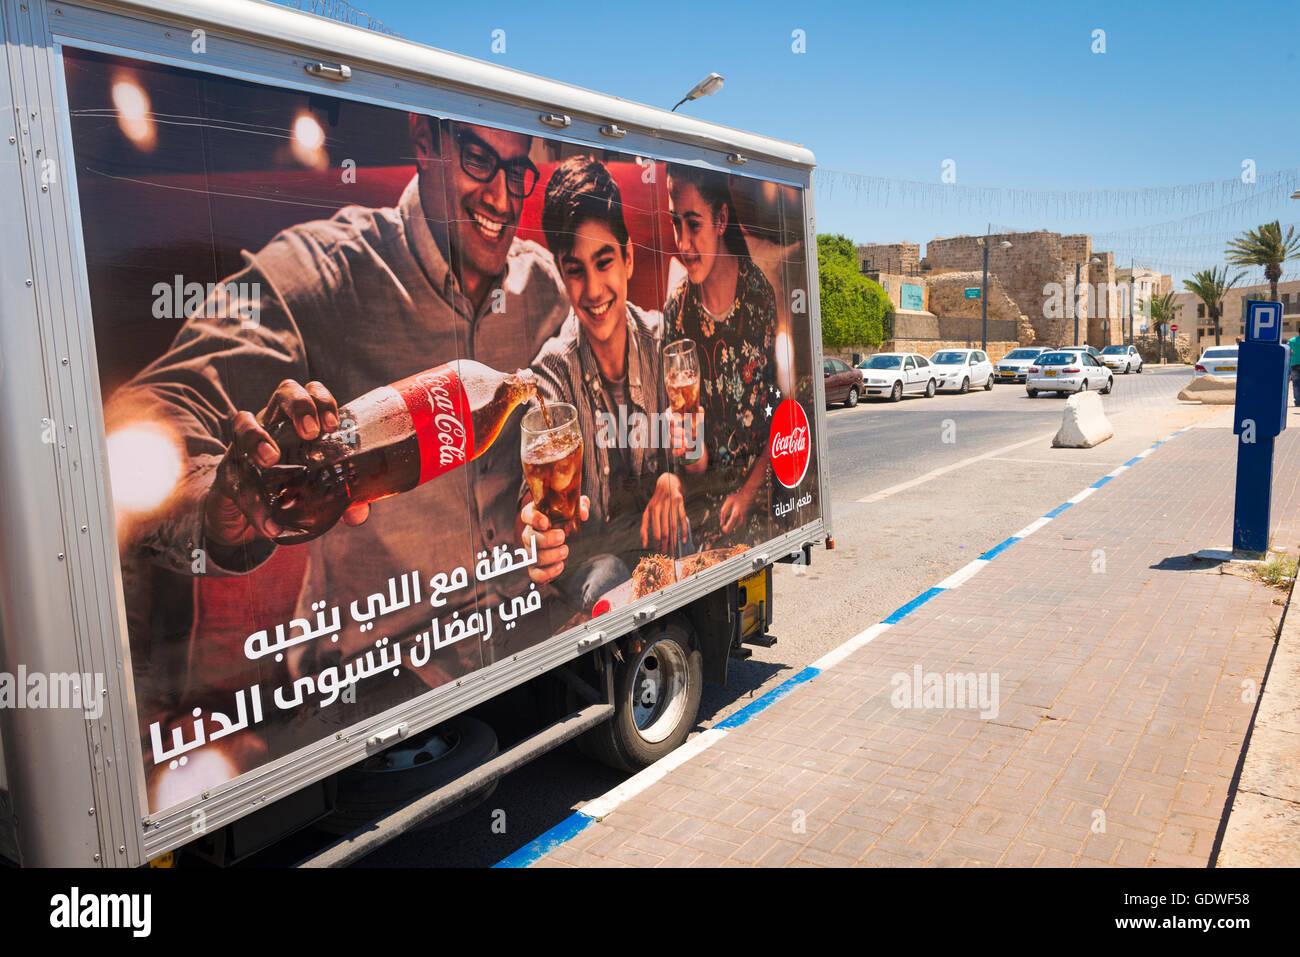 Israele Akko acro autocarro autocarro con spot per la Coca Cola con scrittura araba slogan Foto Stock